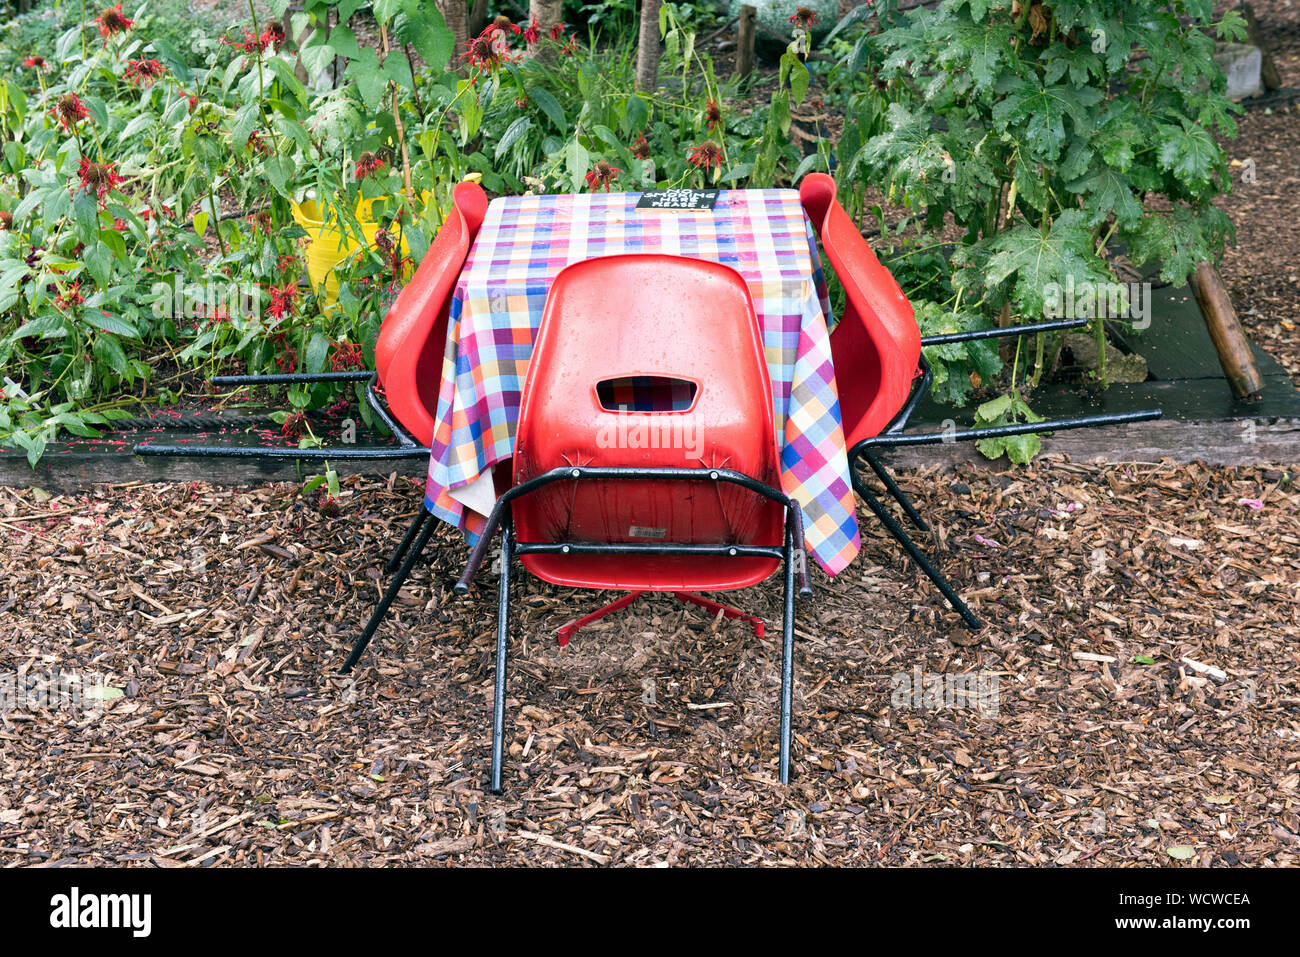 Leere Tabelle mit chequred Tischdecke und drei rote Stühle draußen im Regen, Dalston östlichen Kurve Garten, Kanzleien. Stockfoto